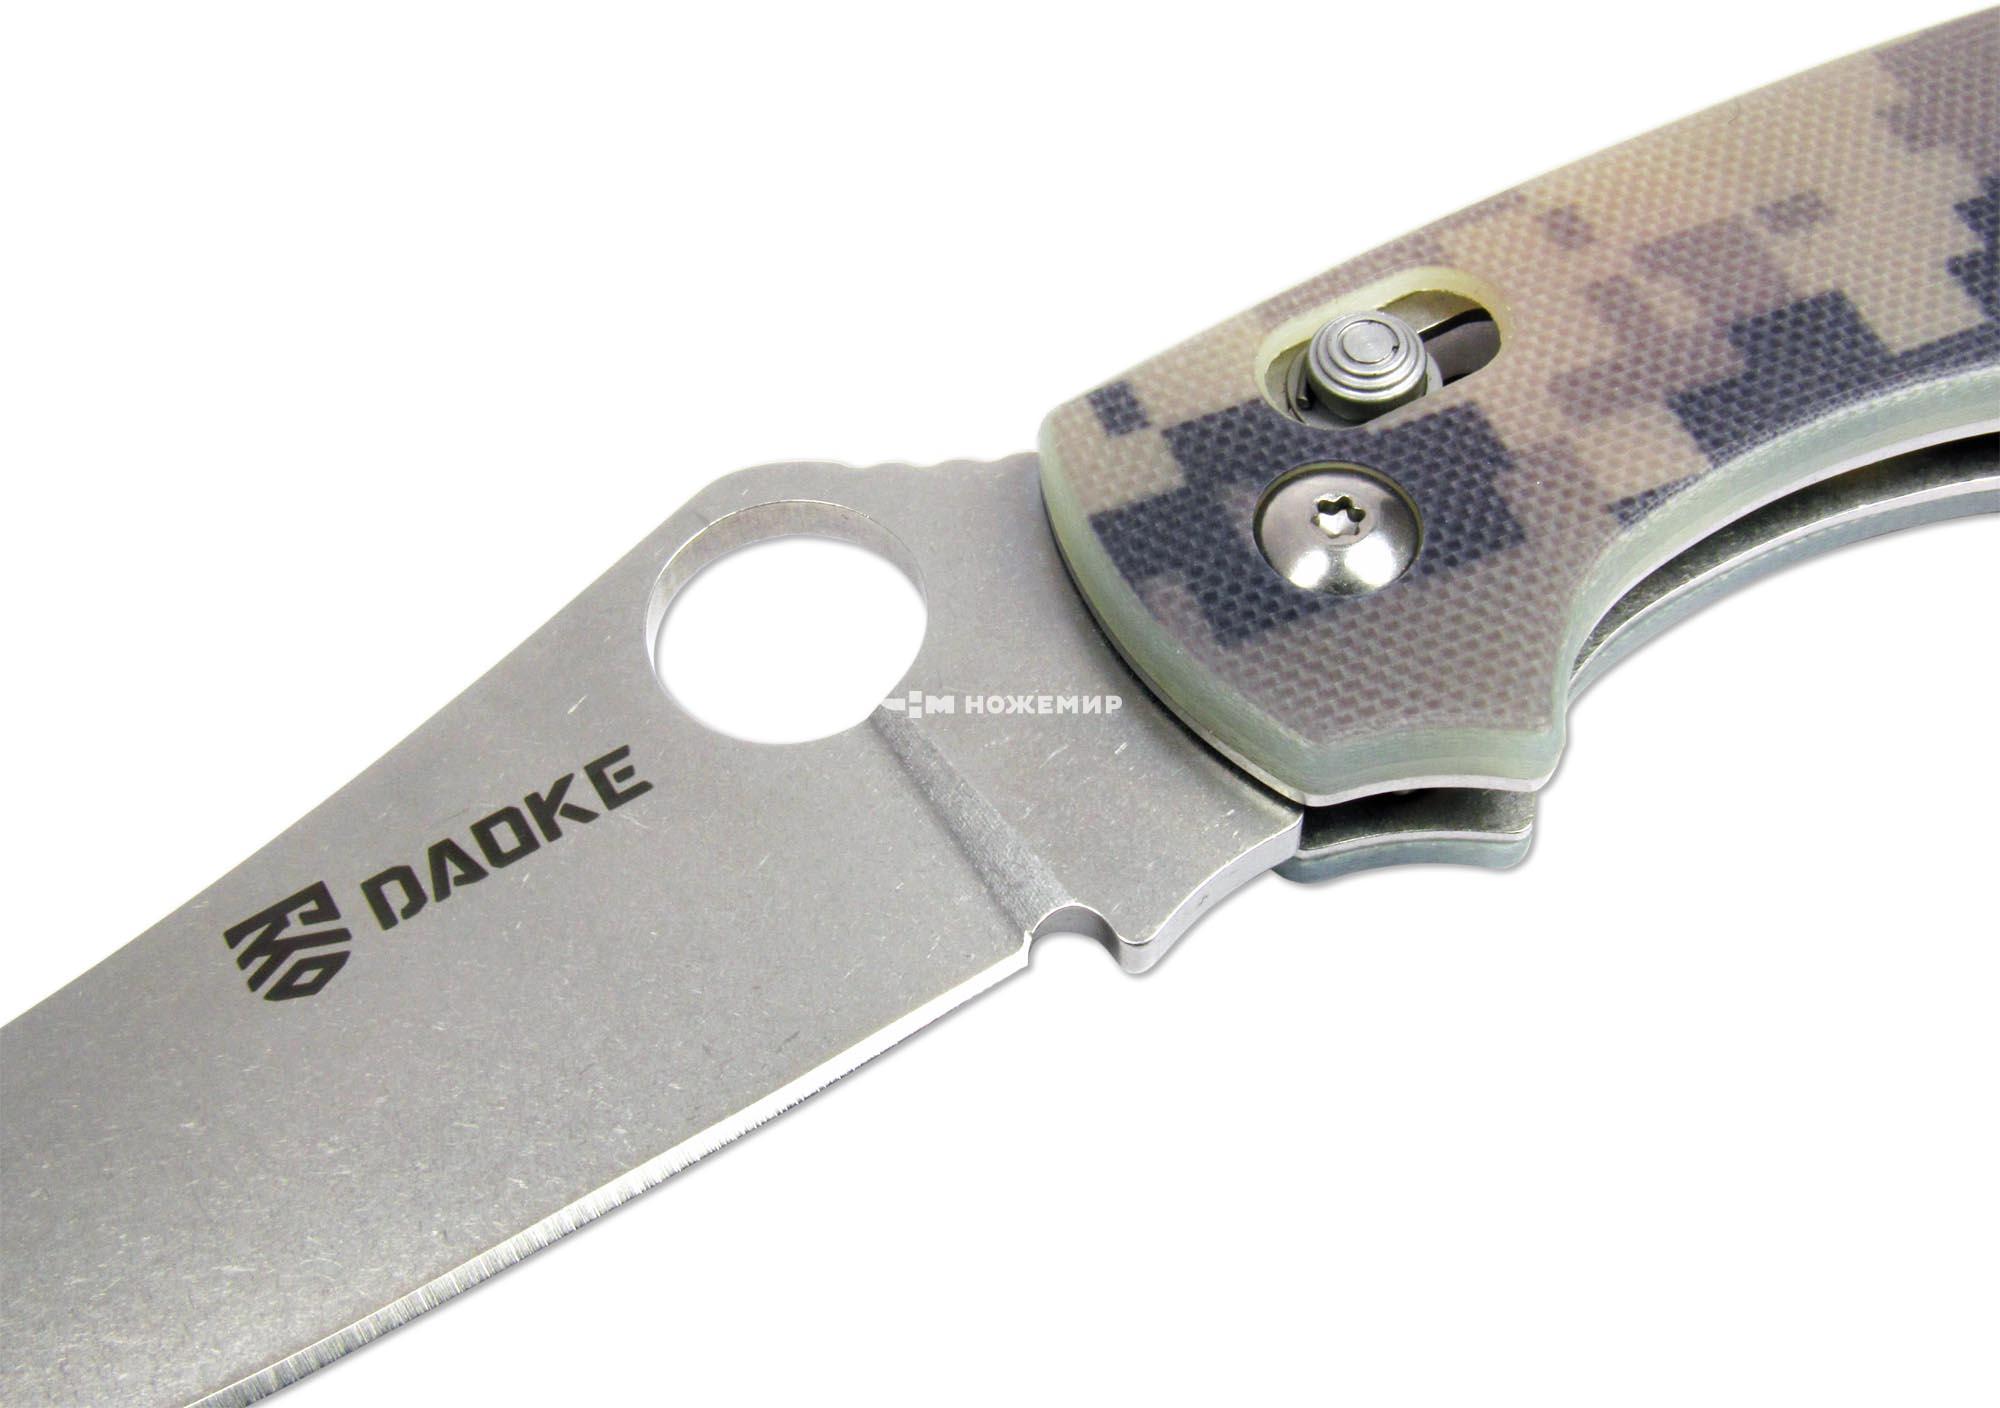 Нож складной с клинком из стали 440C и рукоятью G-10 камуфляж DAOKE D619c